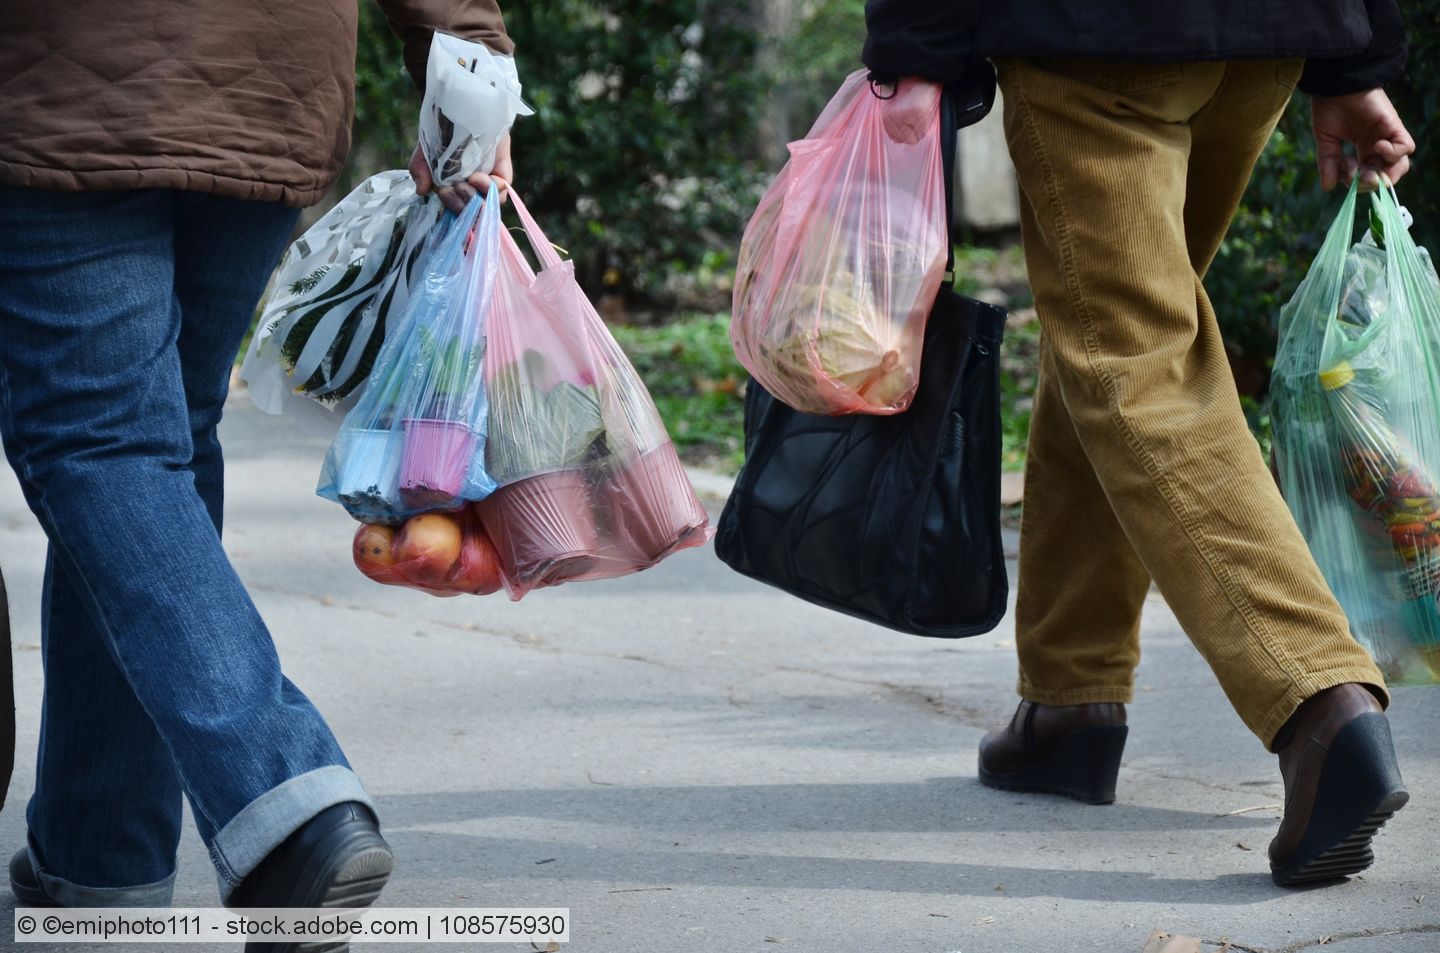 Österreich beschließt Verbot von Kunststofftragetaschen